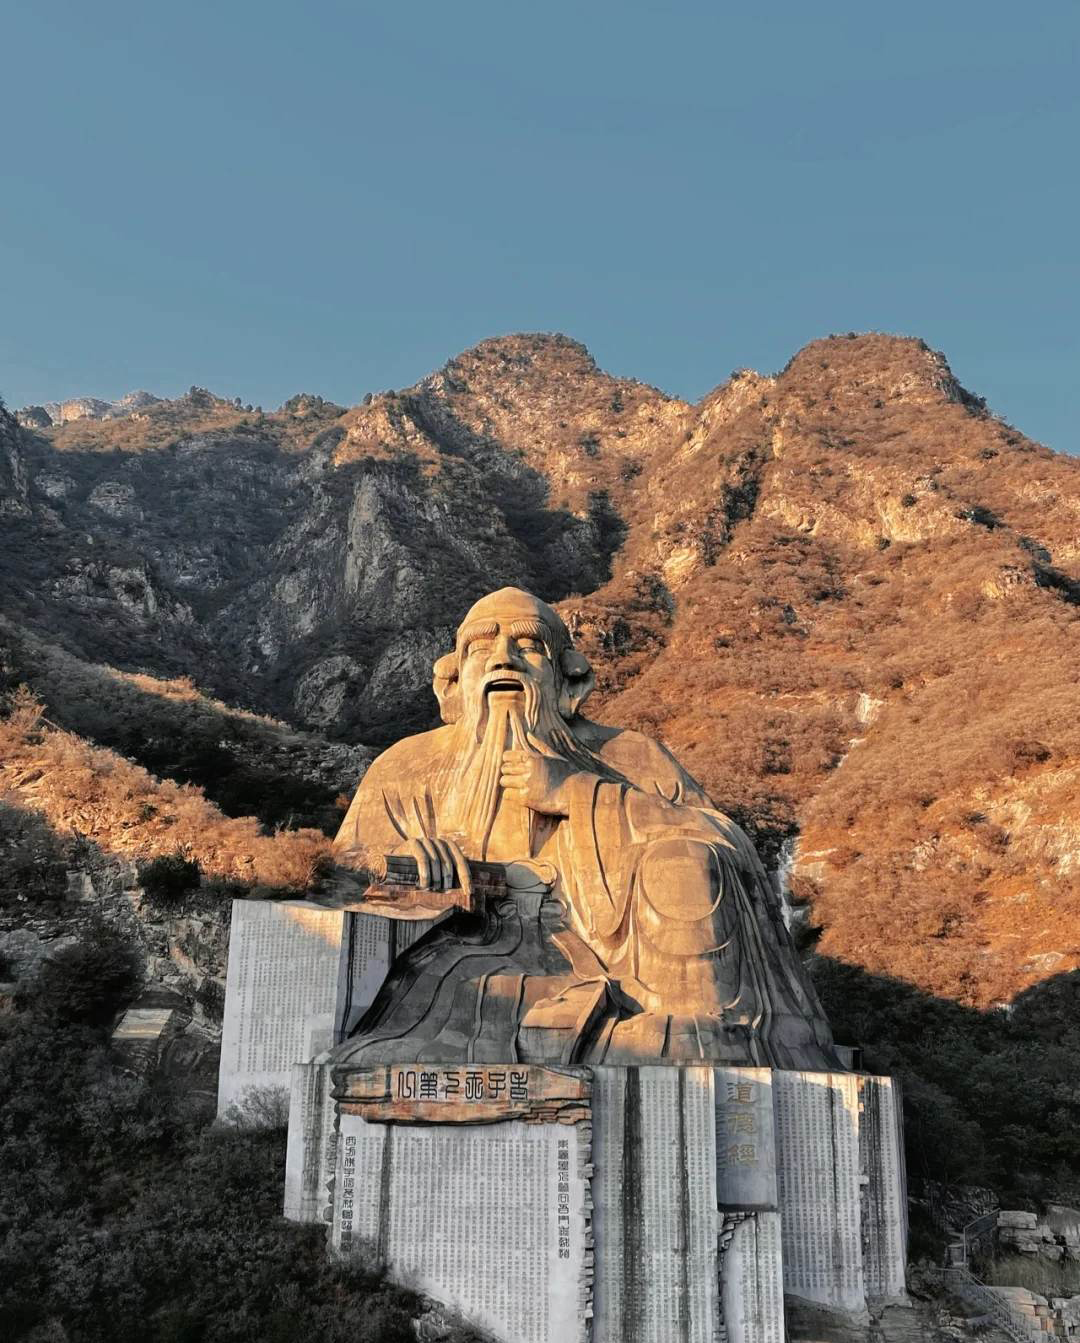 Tượng Lão Tử tương đương tòa nhà 18 tầng, nằm giữa núi rừng ở Trung Quốc - Ảnh 4.